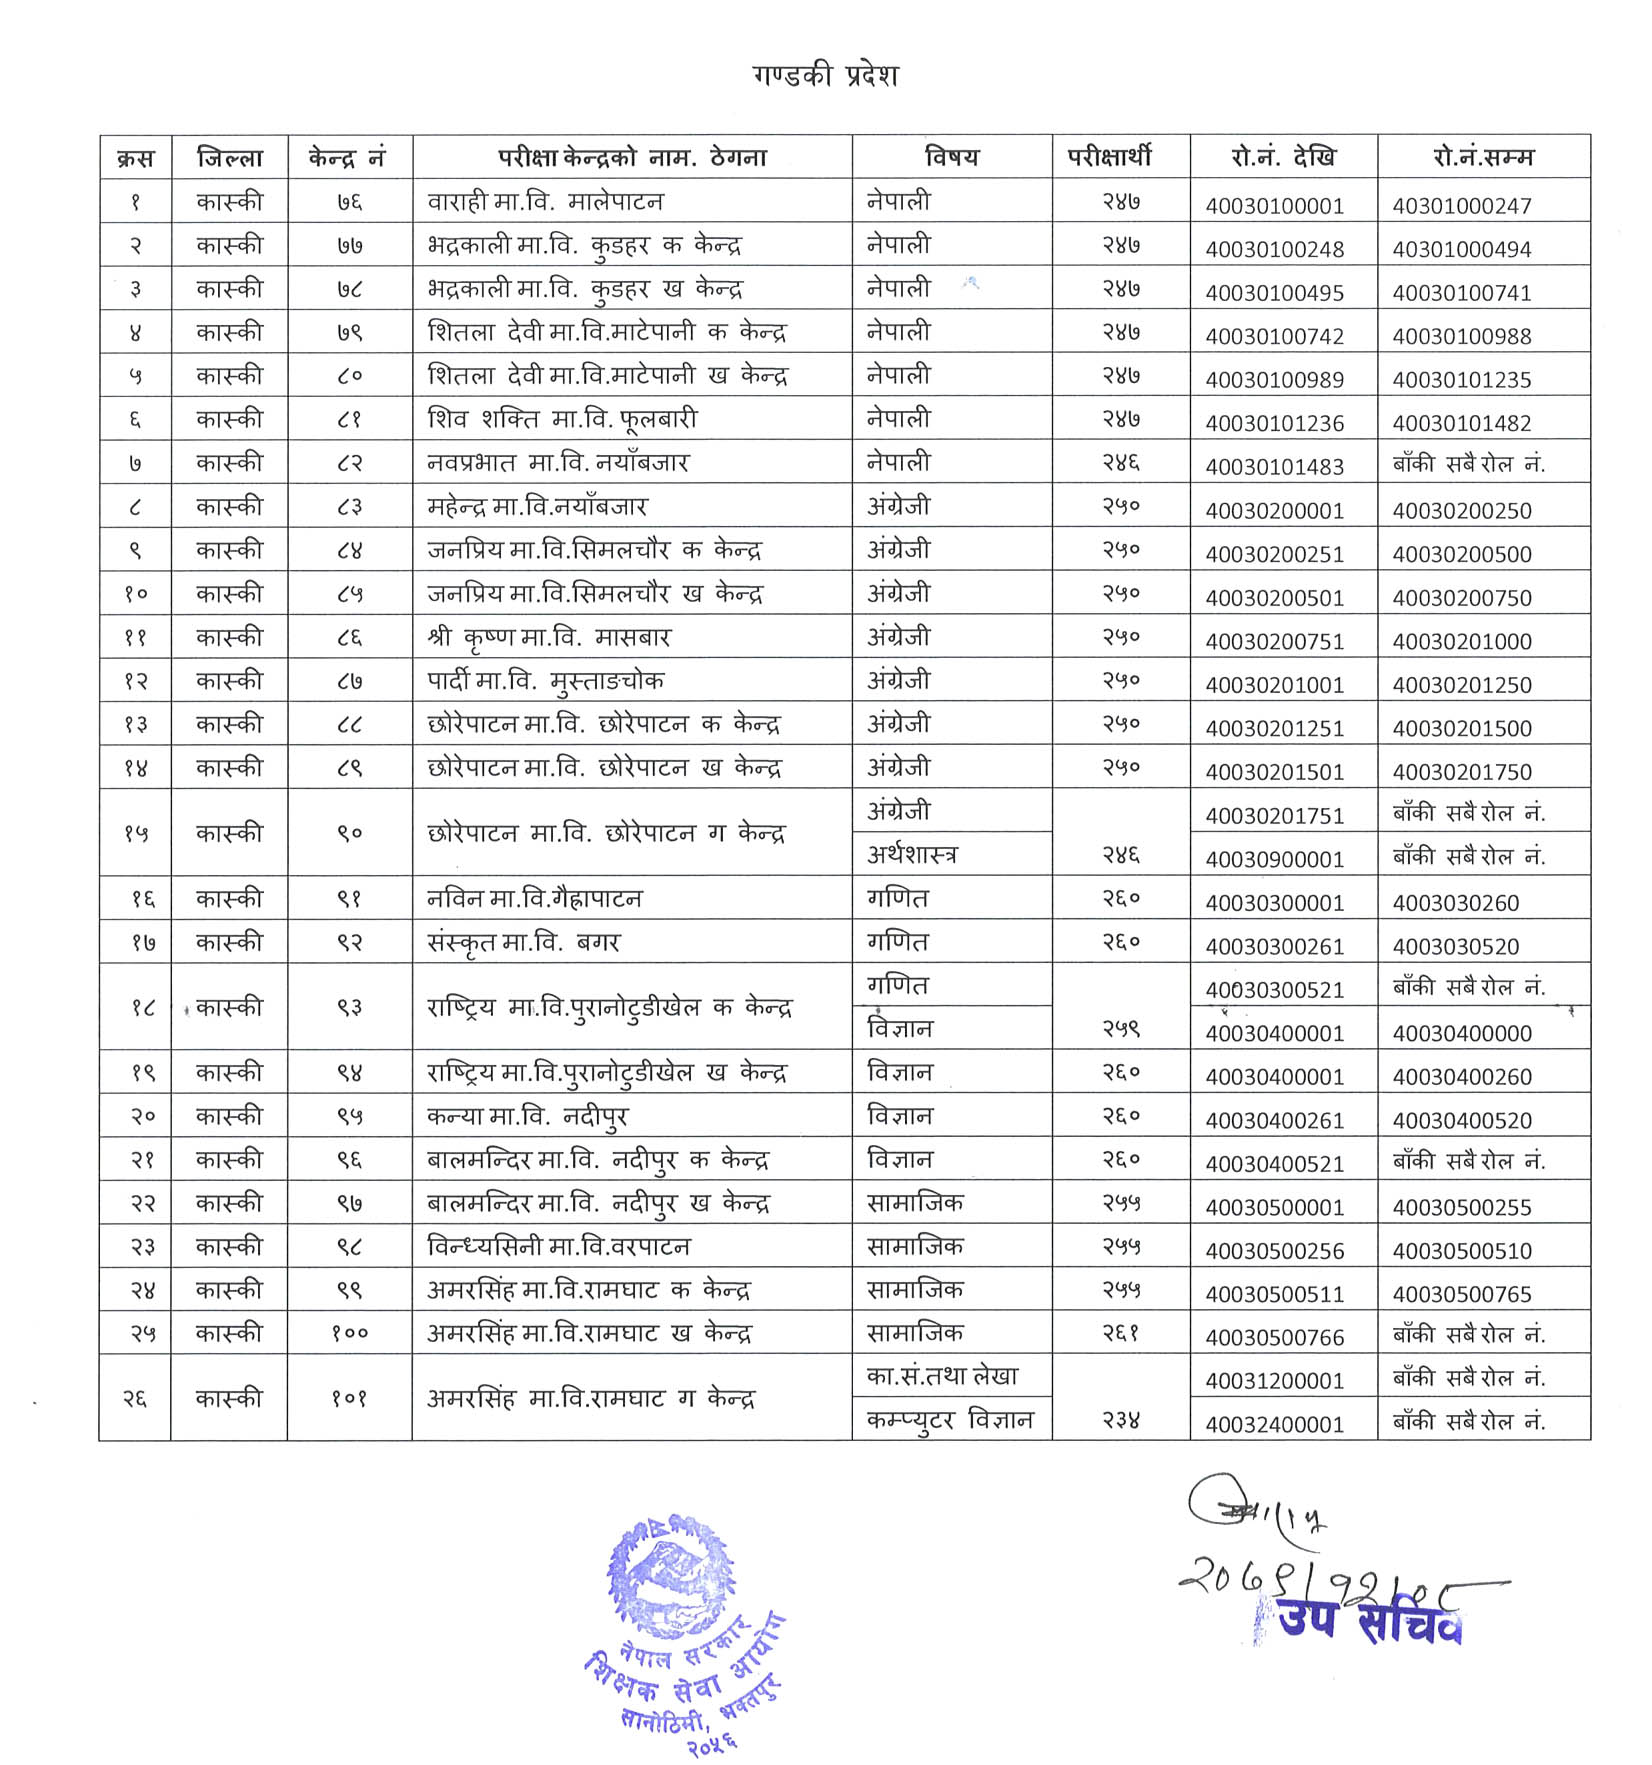 Shikshak Sewa Aayog Secondary Level Gandaki Pradesh Teacher Exam Center 2079